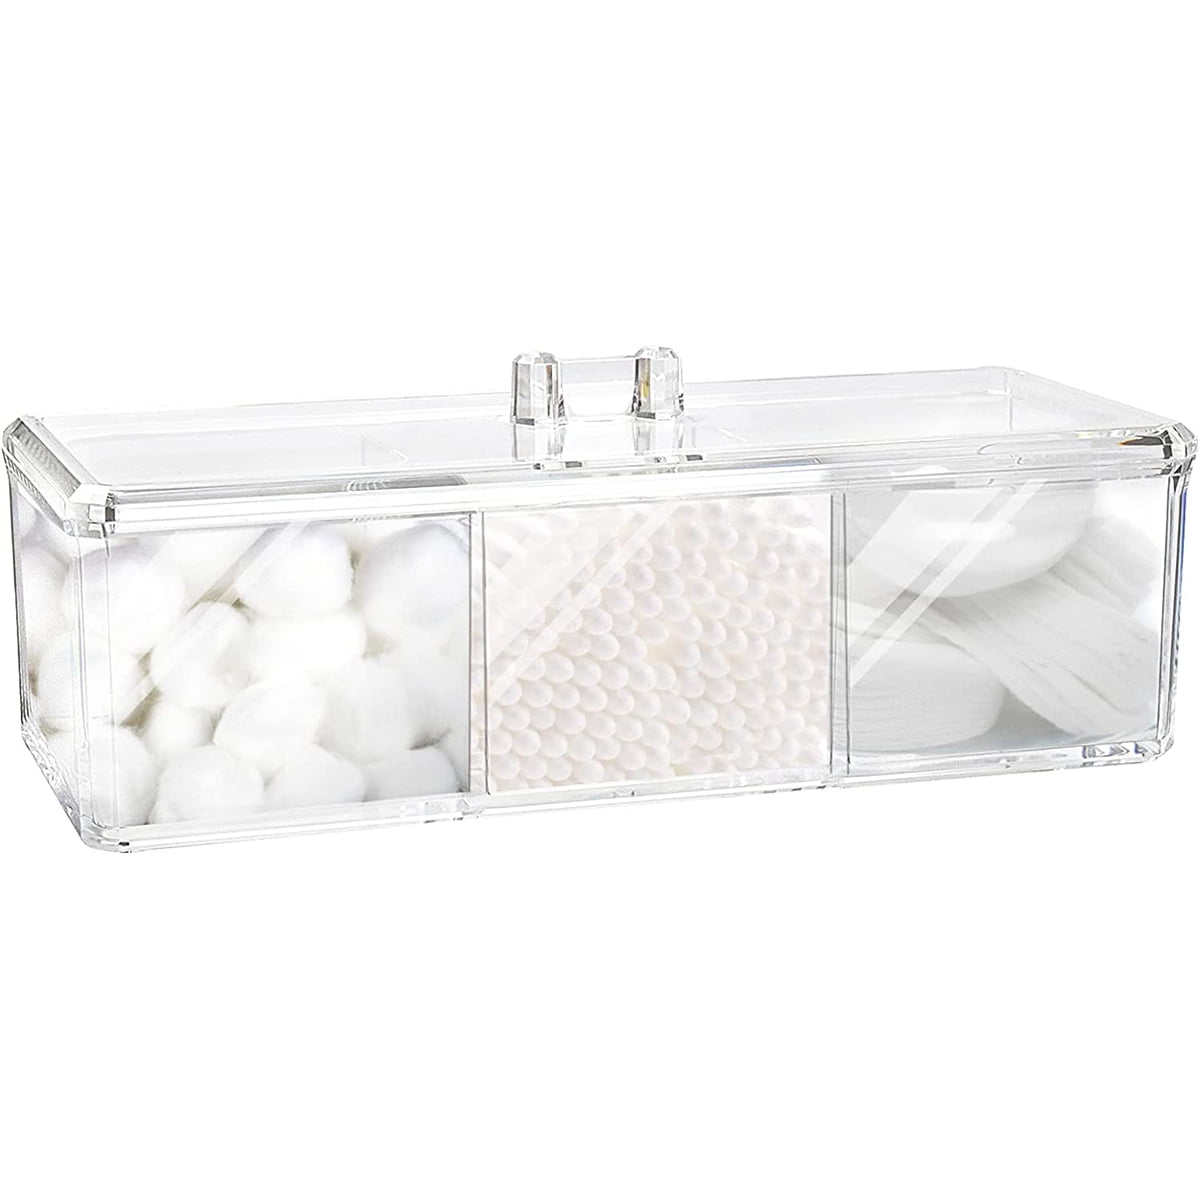 Rebrilliant Cotton Swab Holder Bathroom Organizer Acrylic